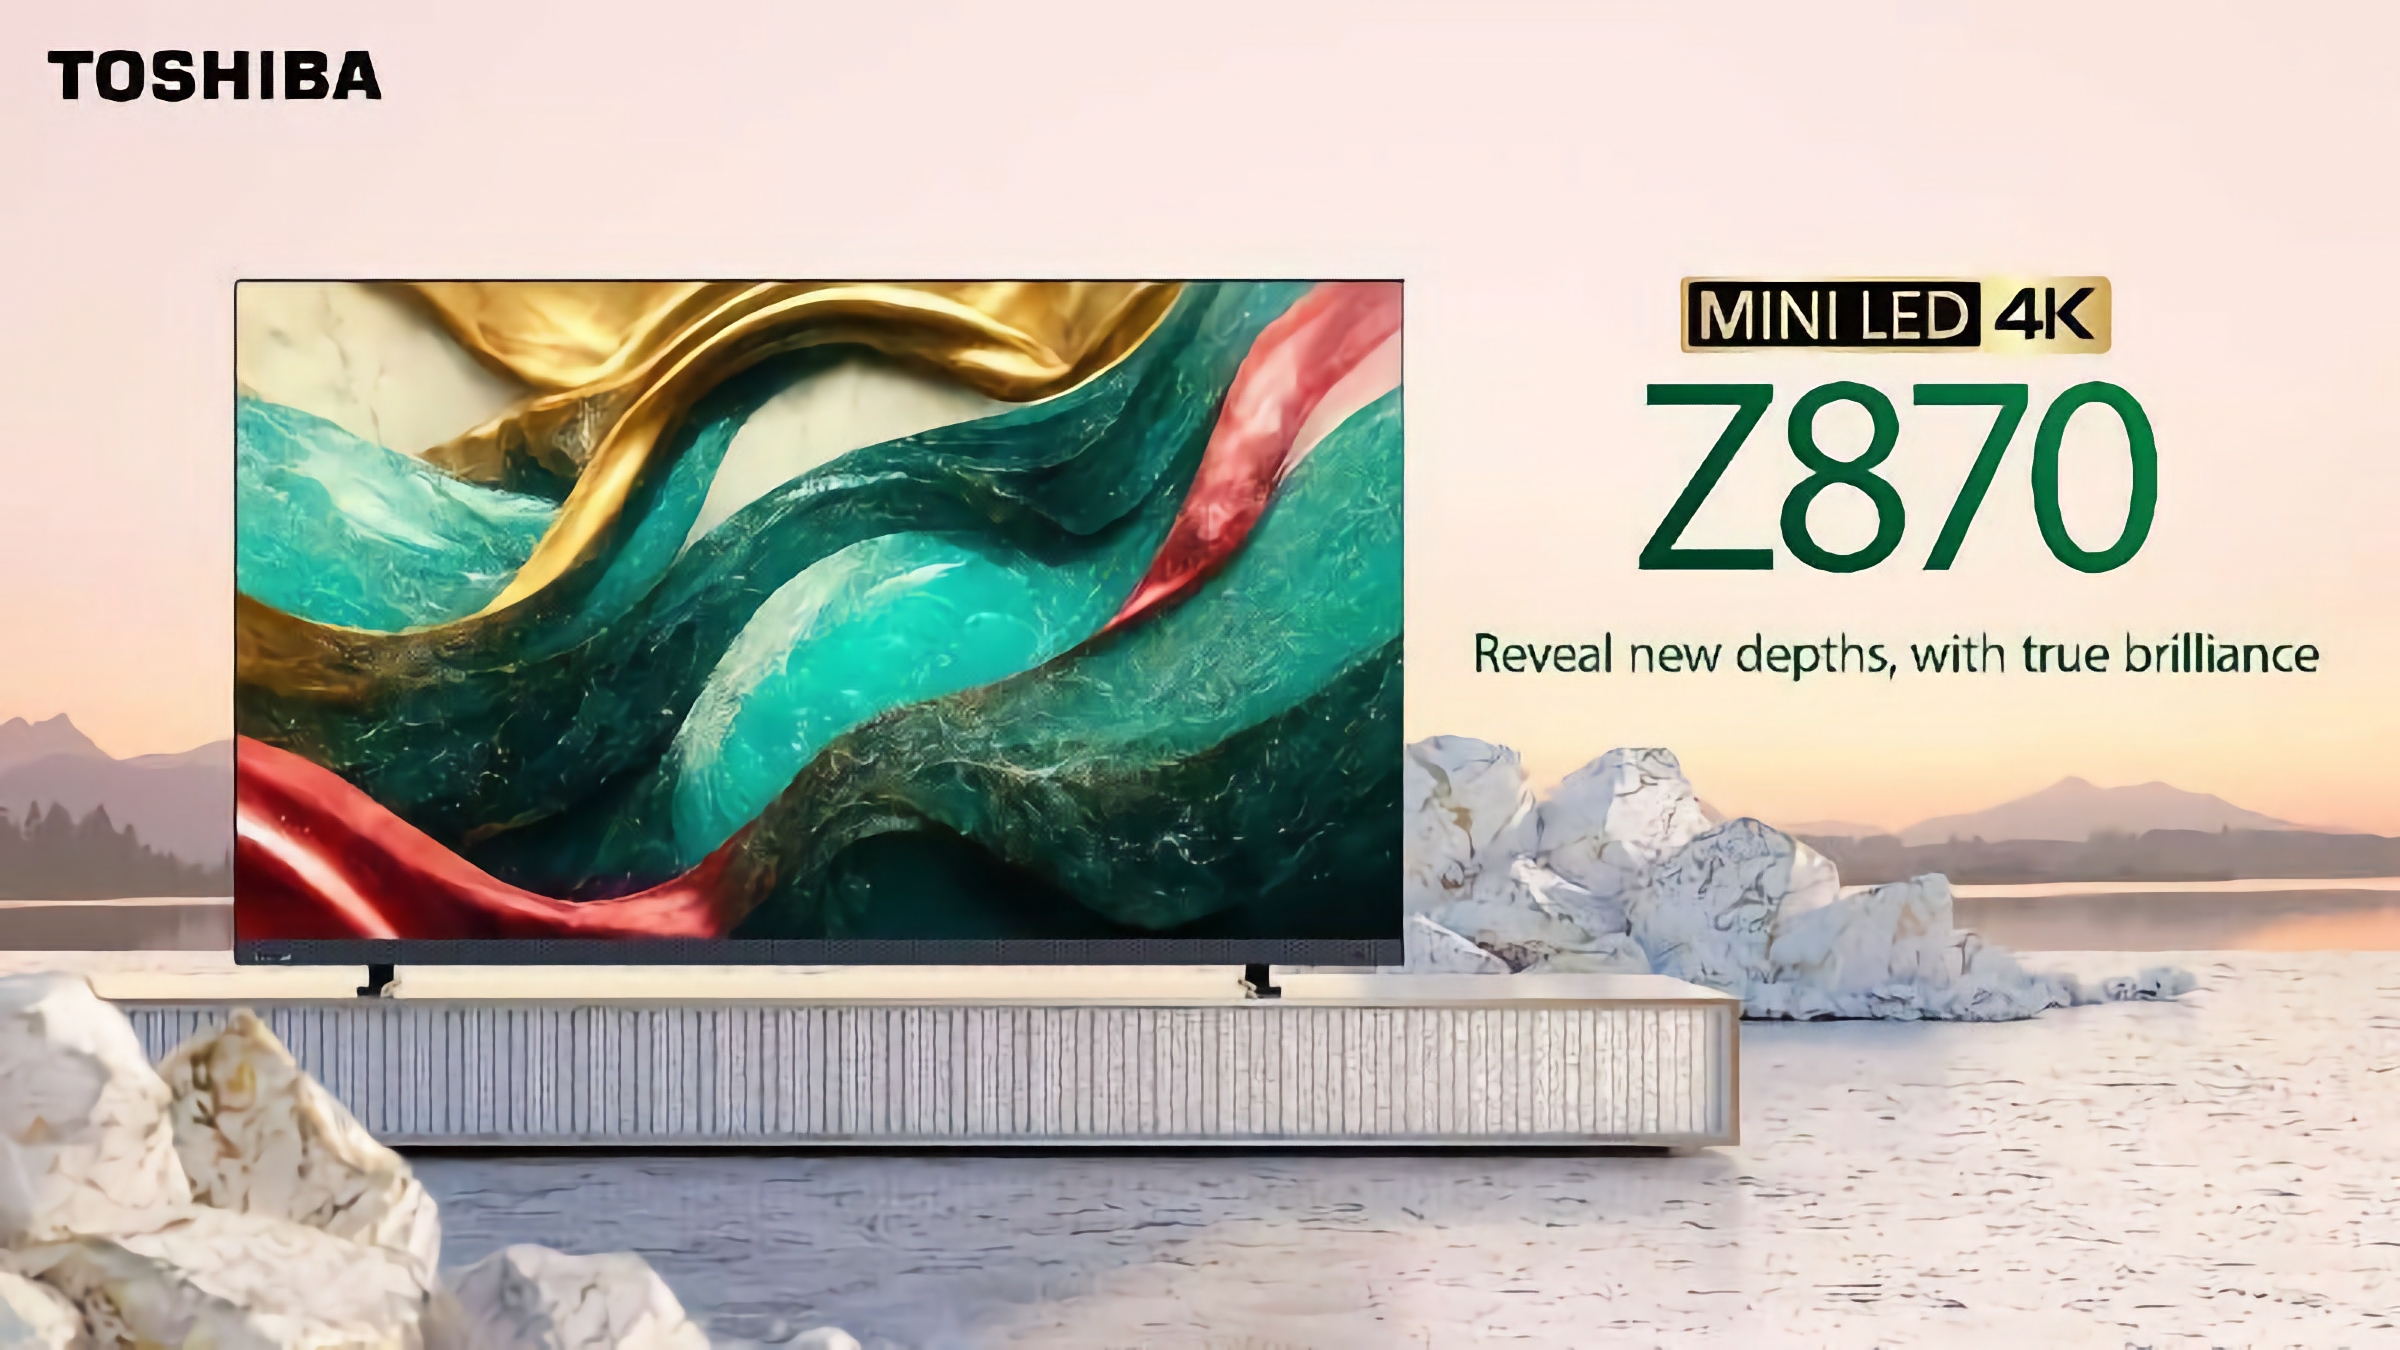 Toshiba Z870 MiniLED 4K Gaming TV: Una gamma di smart TV per il gaming con supporto a 144 Hz e tecnologia AMD FreeSync